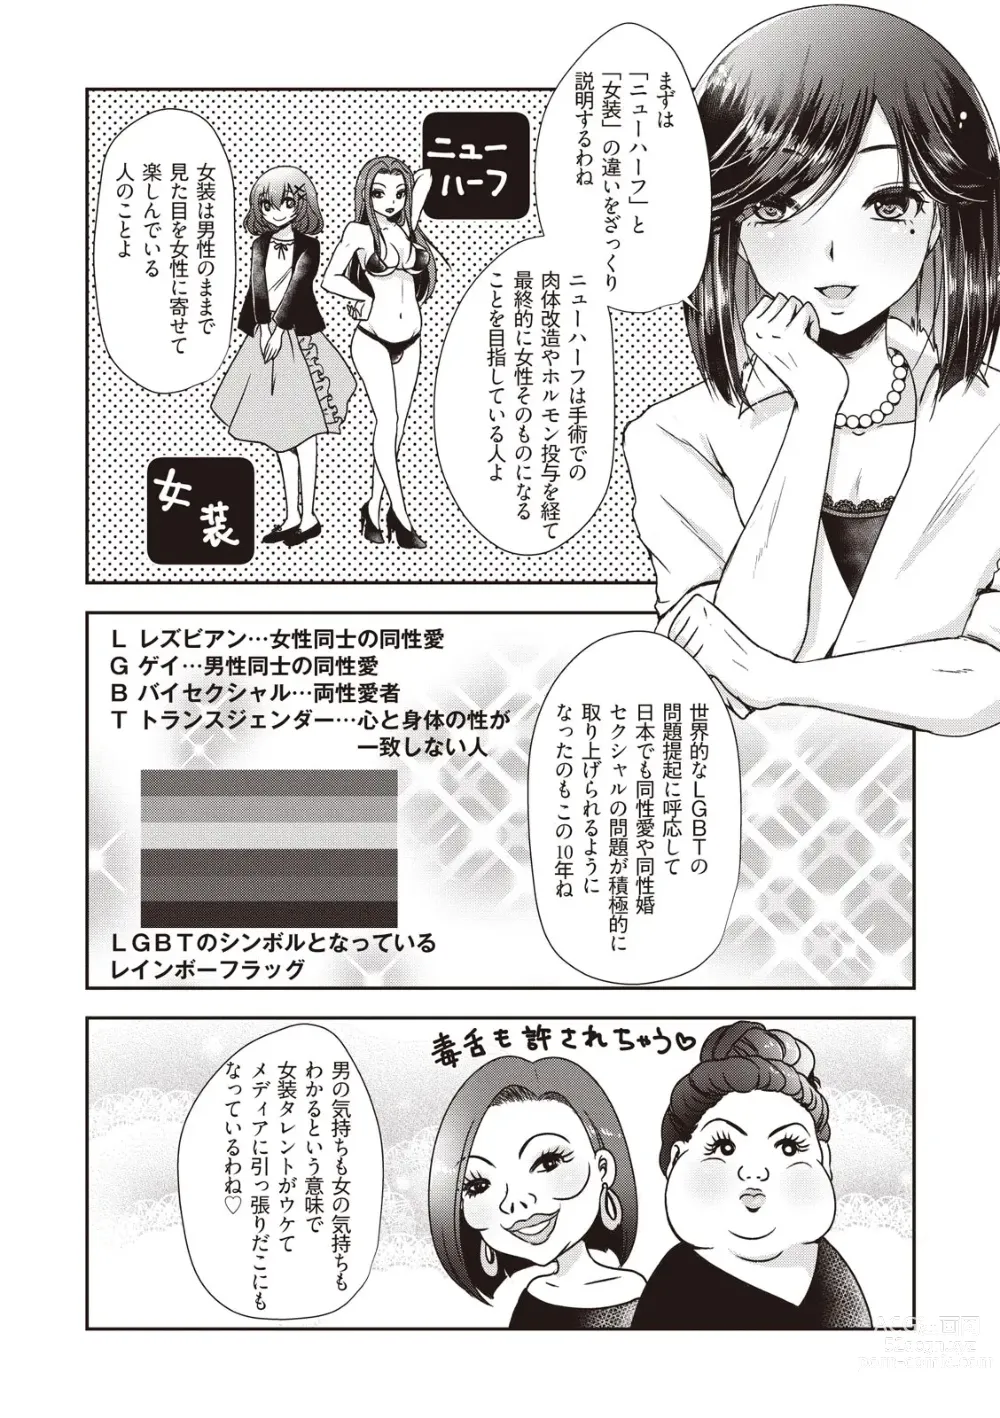 Page 6 of manga Manga de Furikaeru Otokonoko 10-nenshi